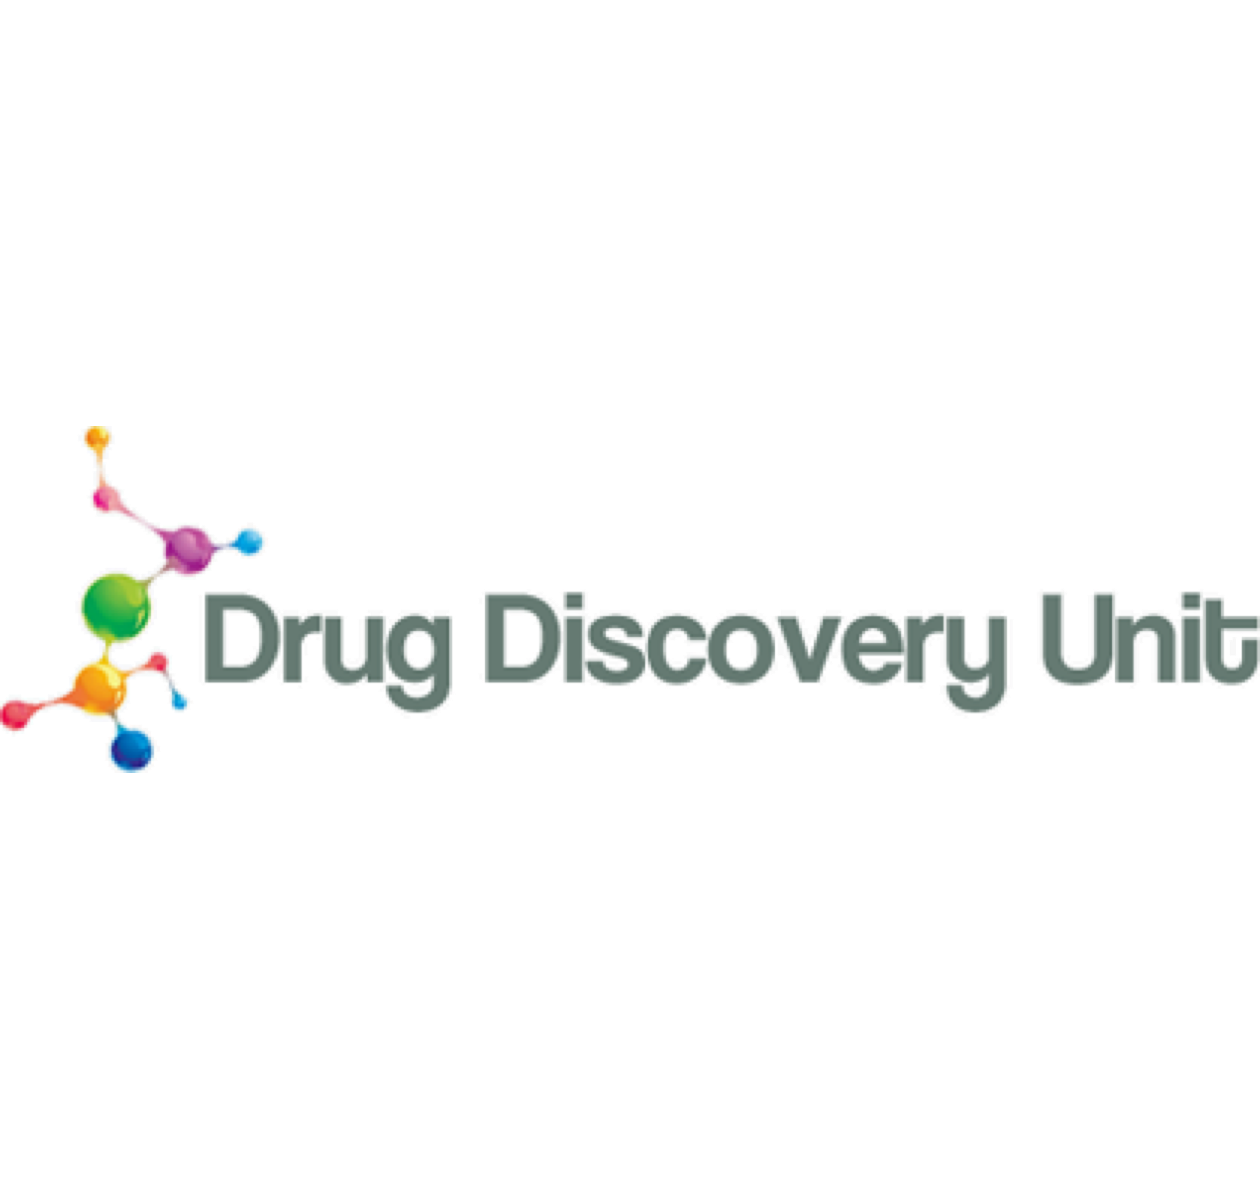 University of Dundee – Drug Discovery Unit Logo